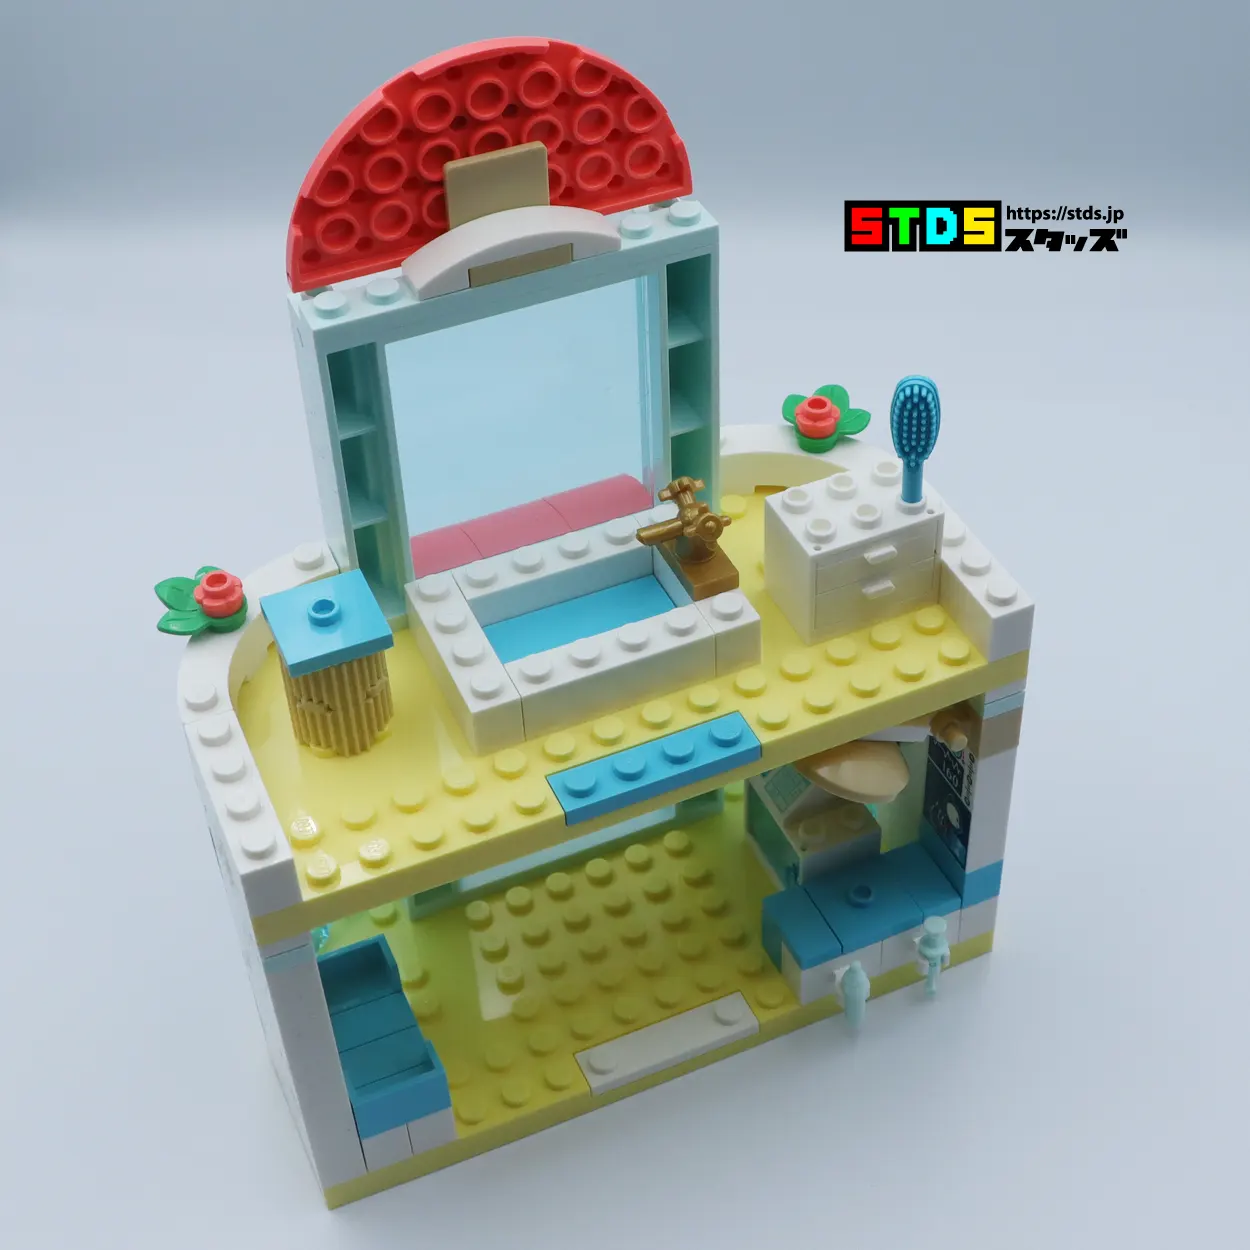 レゴ R レビュー ハートレイクシティのどうぶつクリニック 22年新パーツ観音開き採用 ステイサムと猫も登場 スタッズ レゴ R Lego R 総合ファンニュースメディア